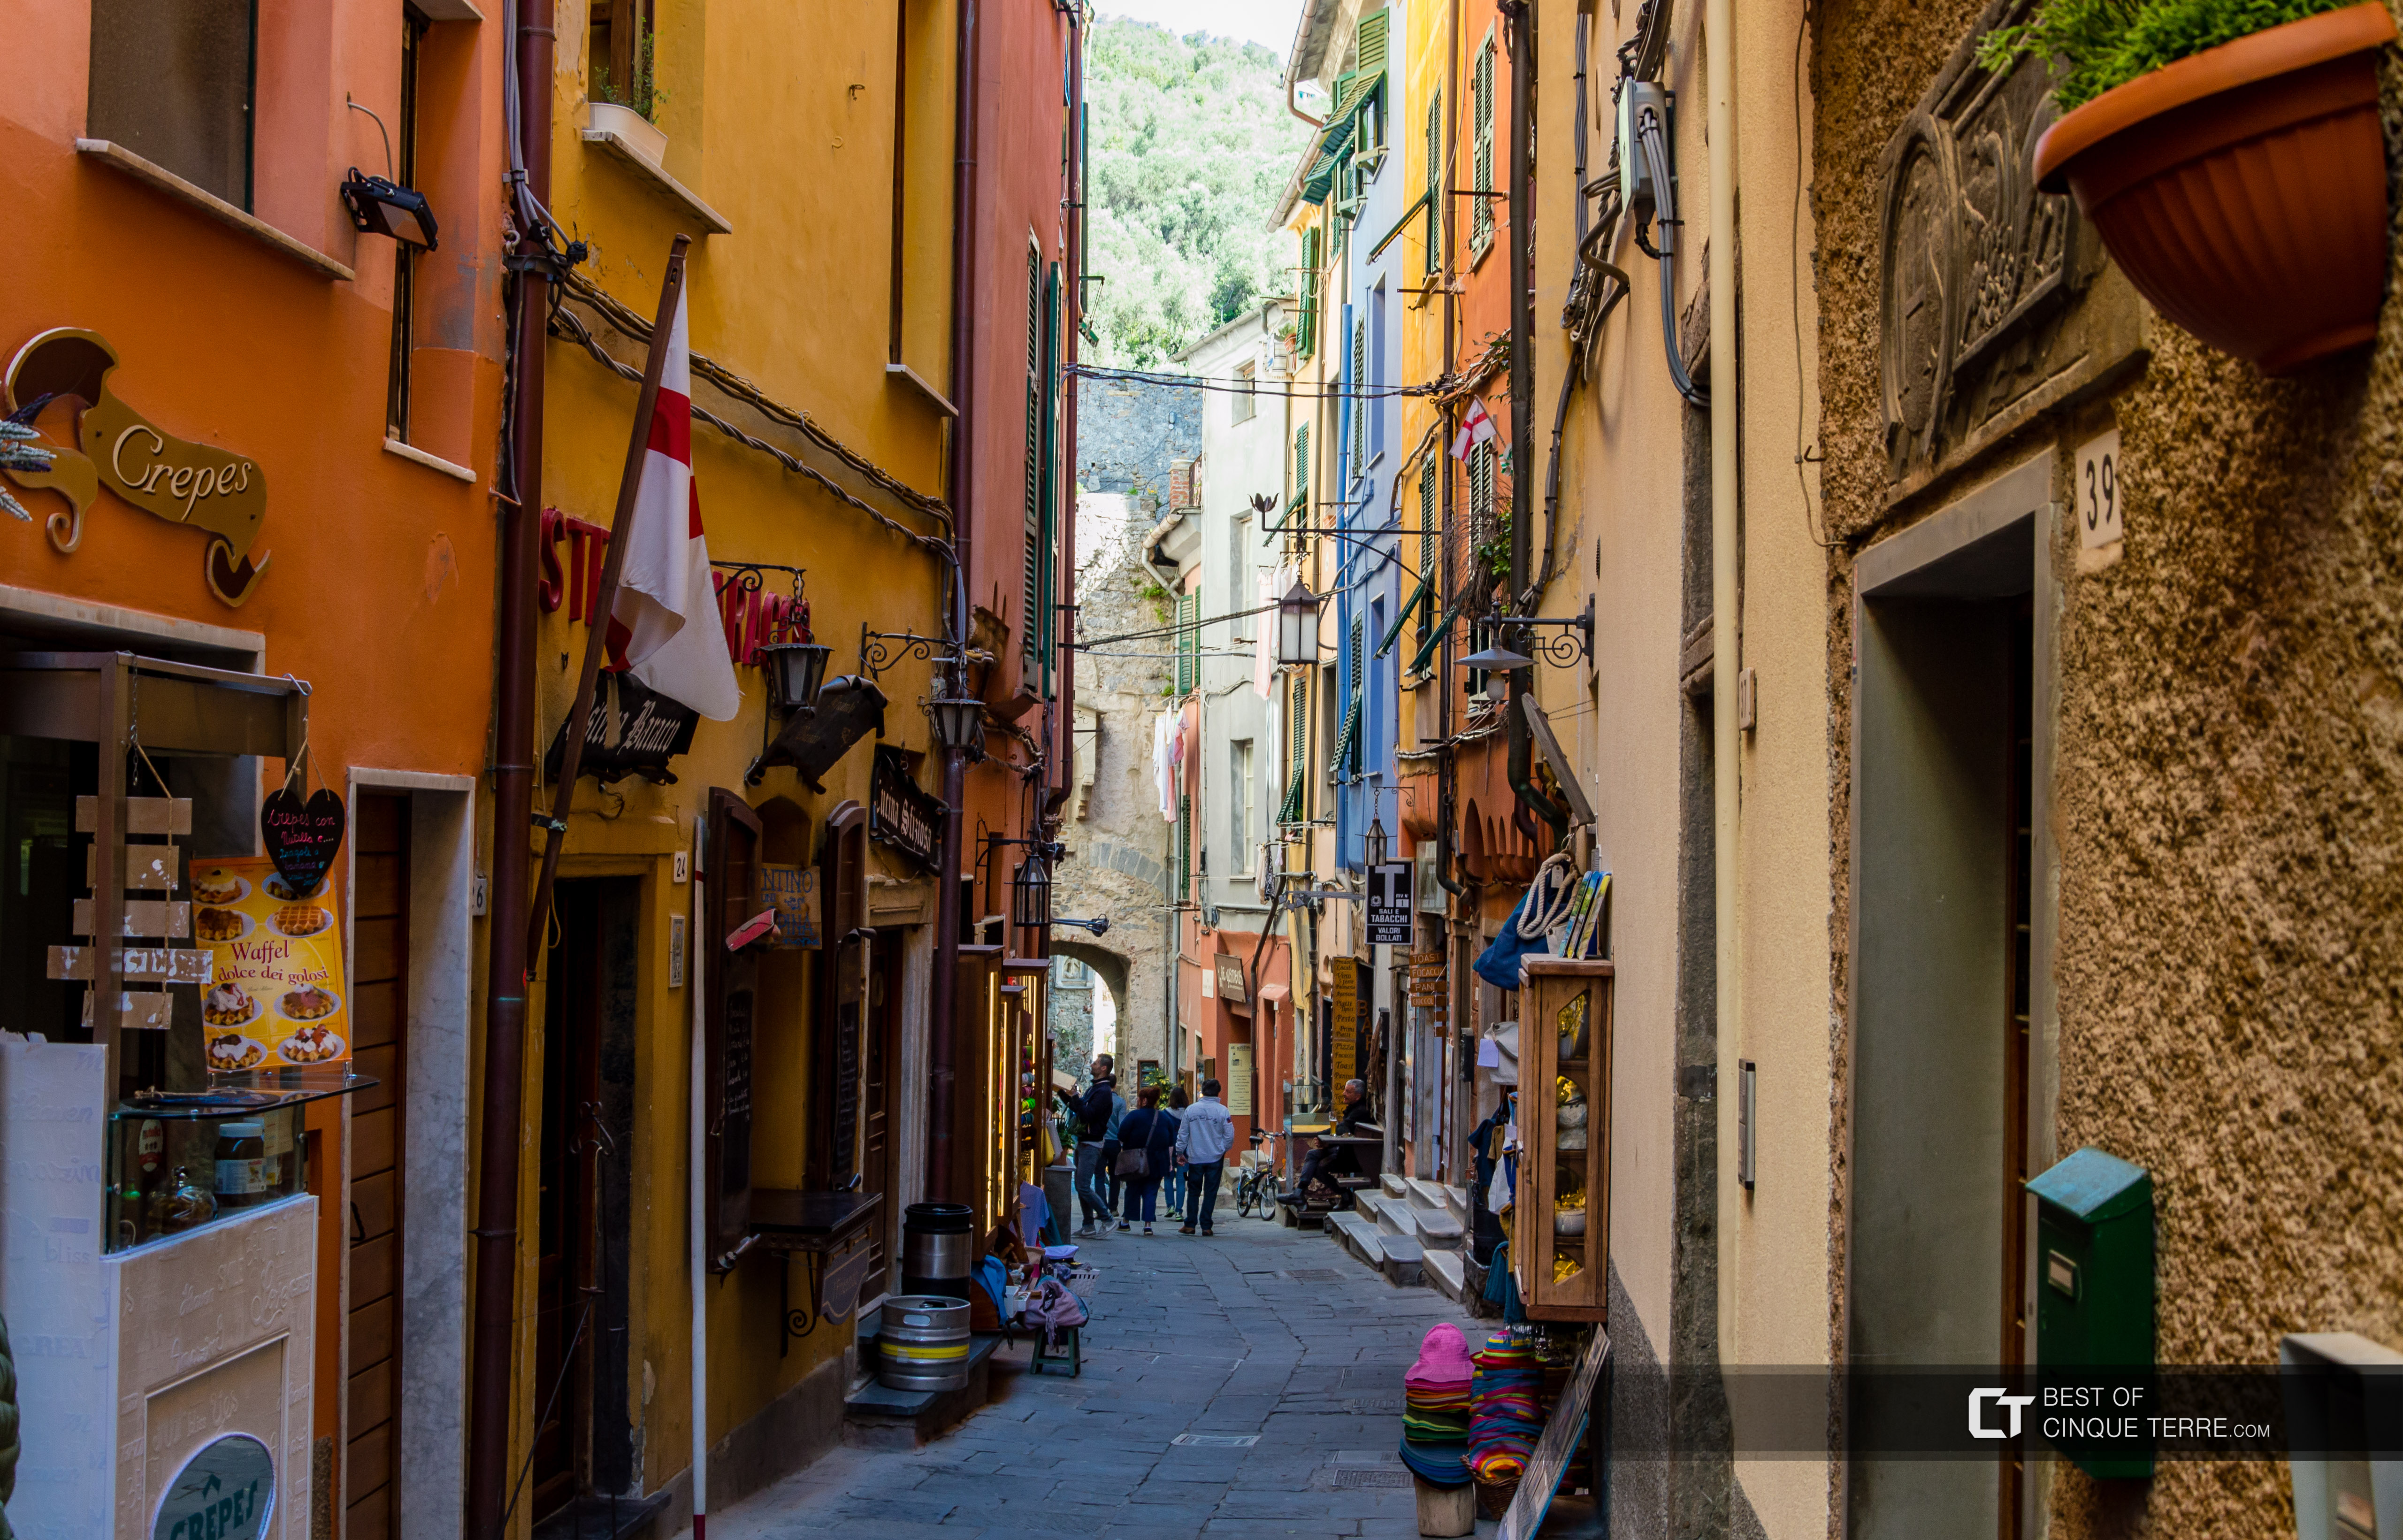 La calle principal, Portovenere, Italia